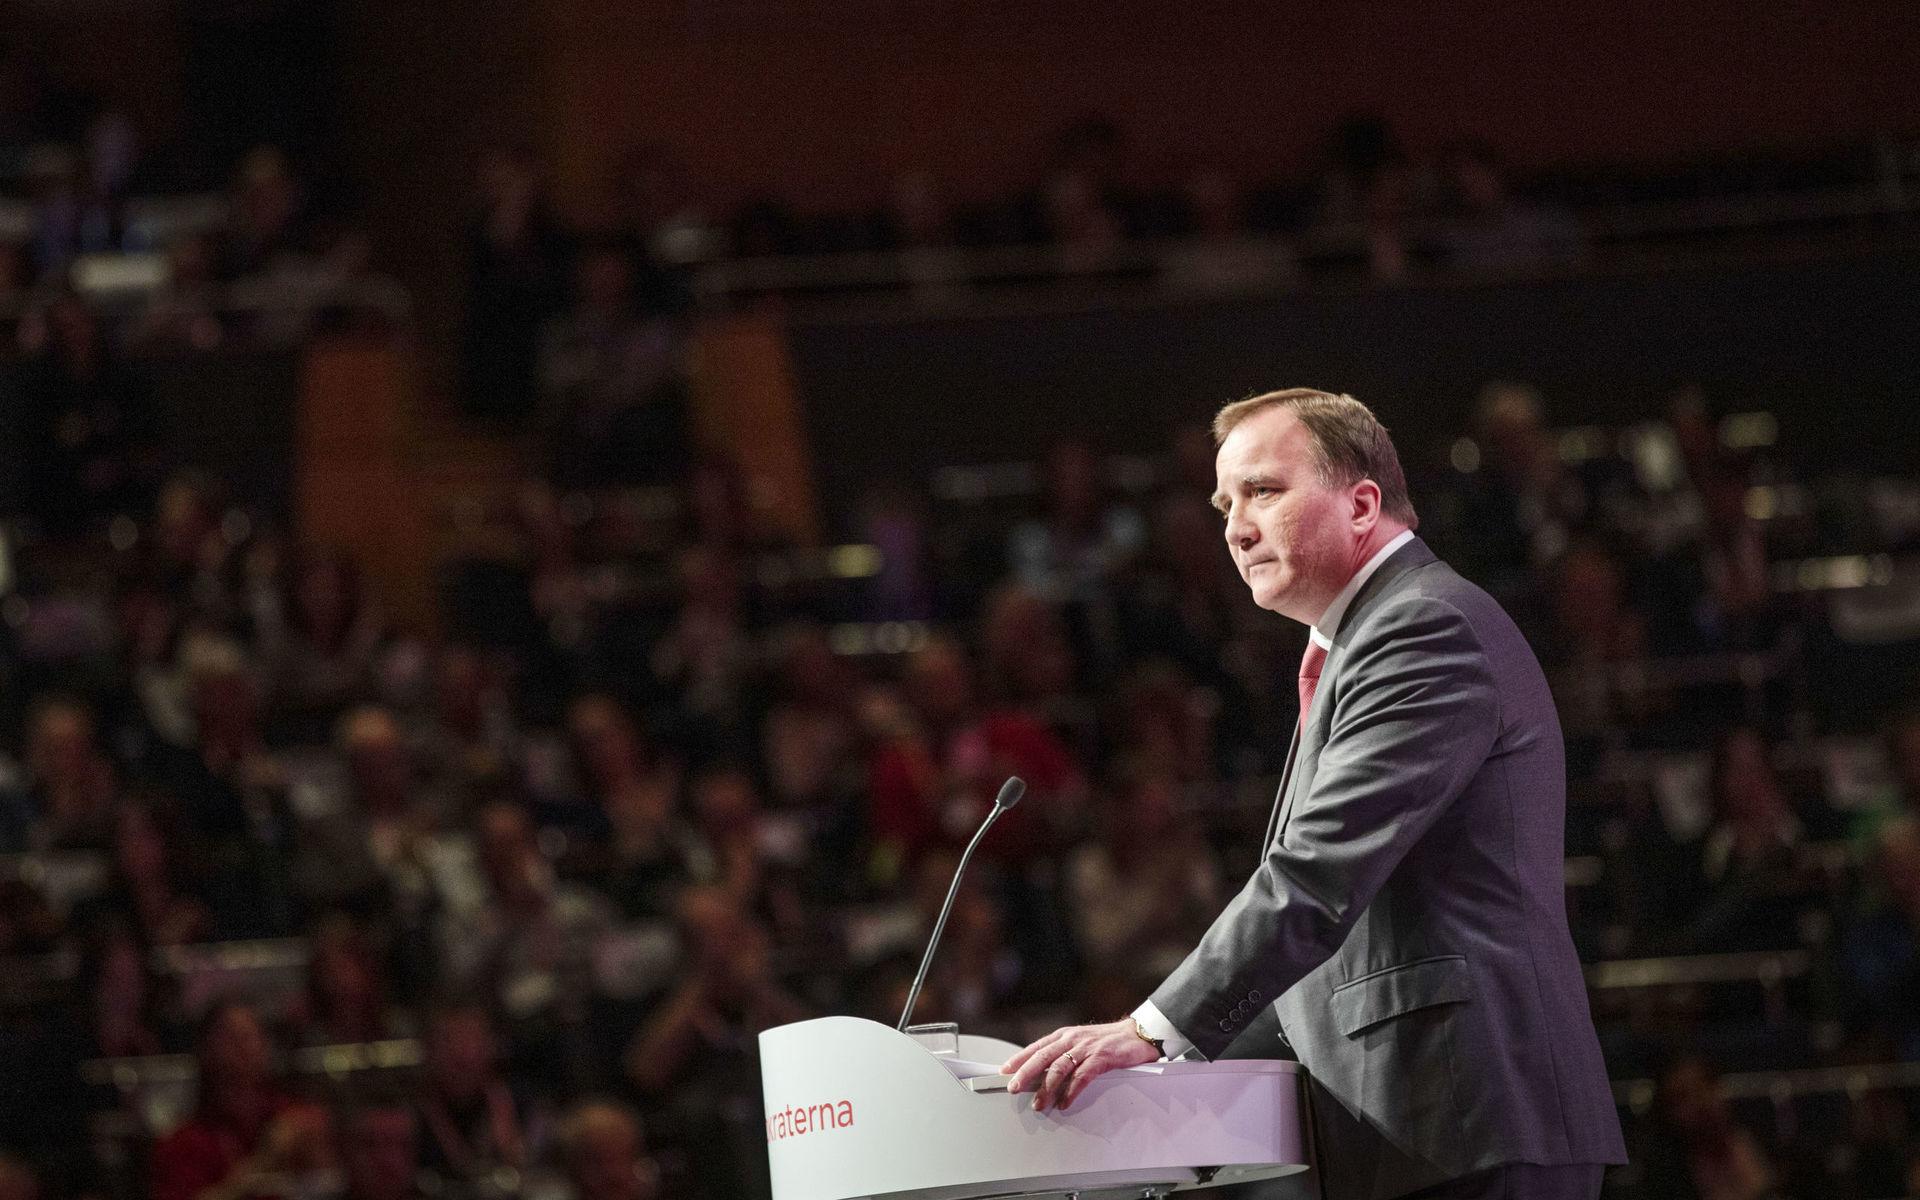 Socialdemokraternas partiledare Stefan Löfven talar på S-kongressen i Örebro på lördagen.